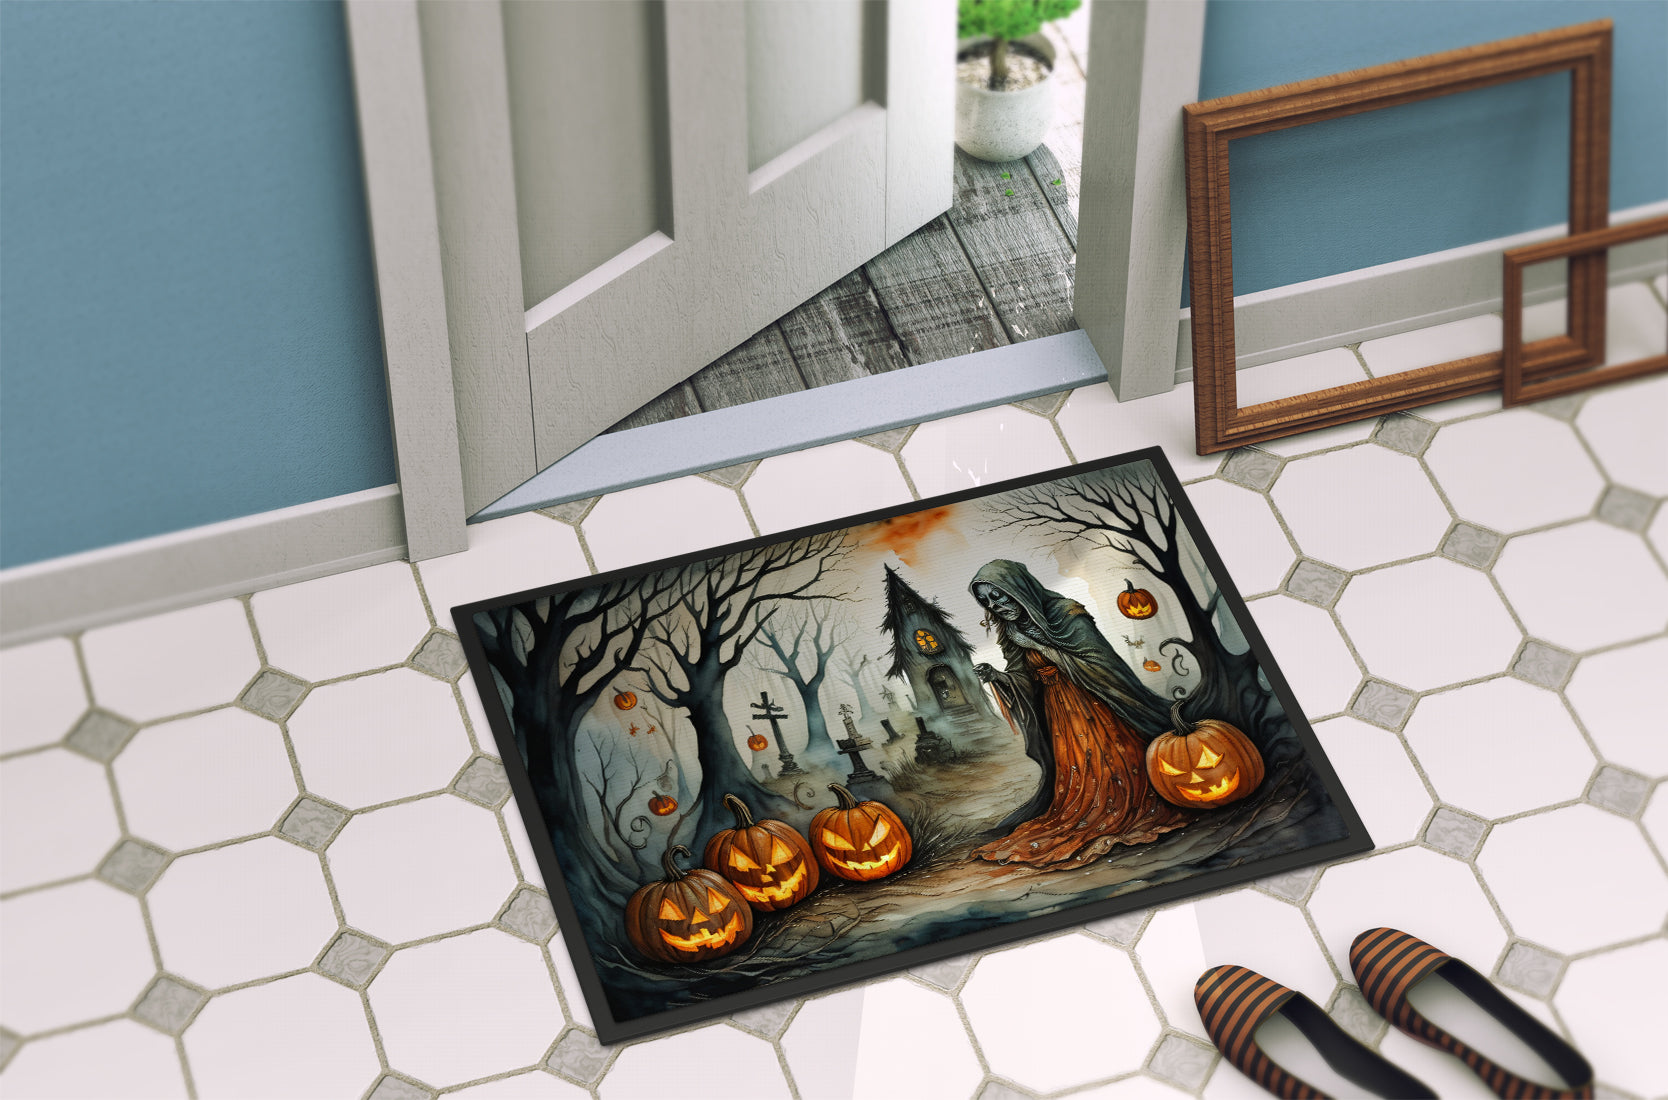 The Weeping Woman Spooky Halloween Doormat 18x27